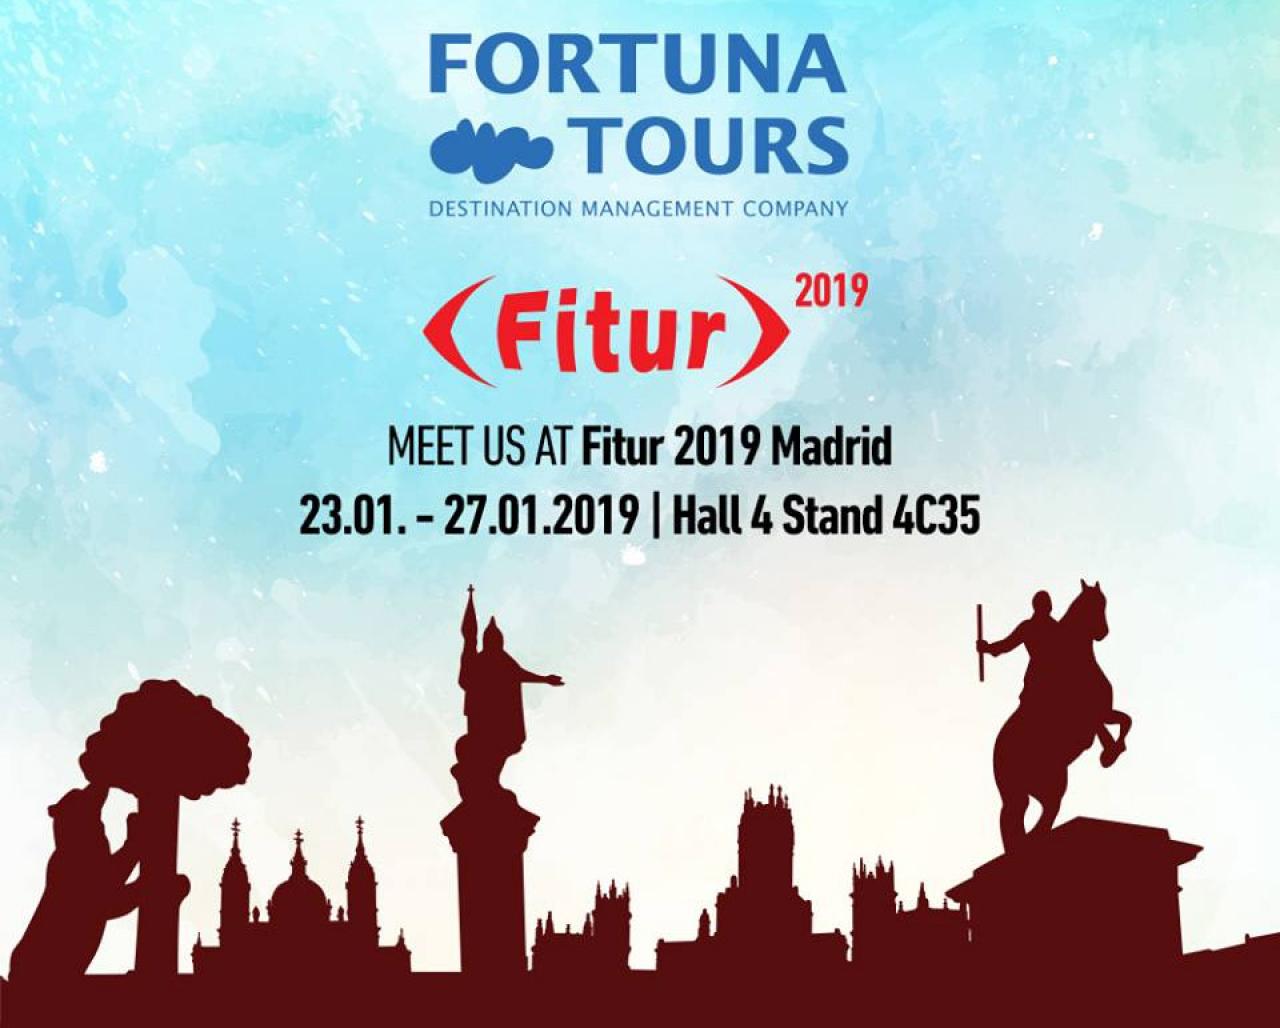 Fortuna Tours Fitur - Fortuna Tours tradicionalno na sajmu turizma u Madridu